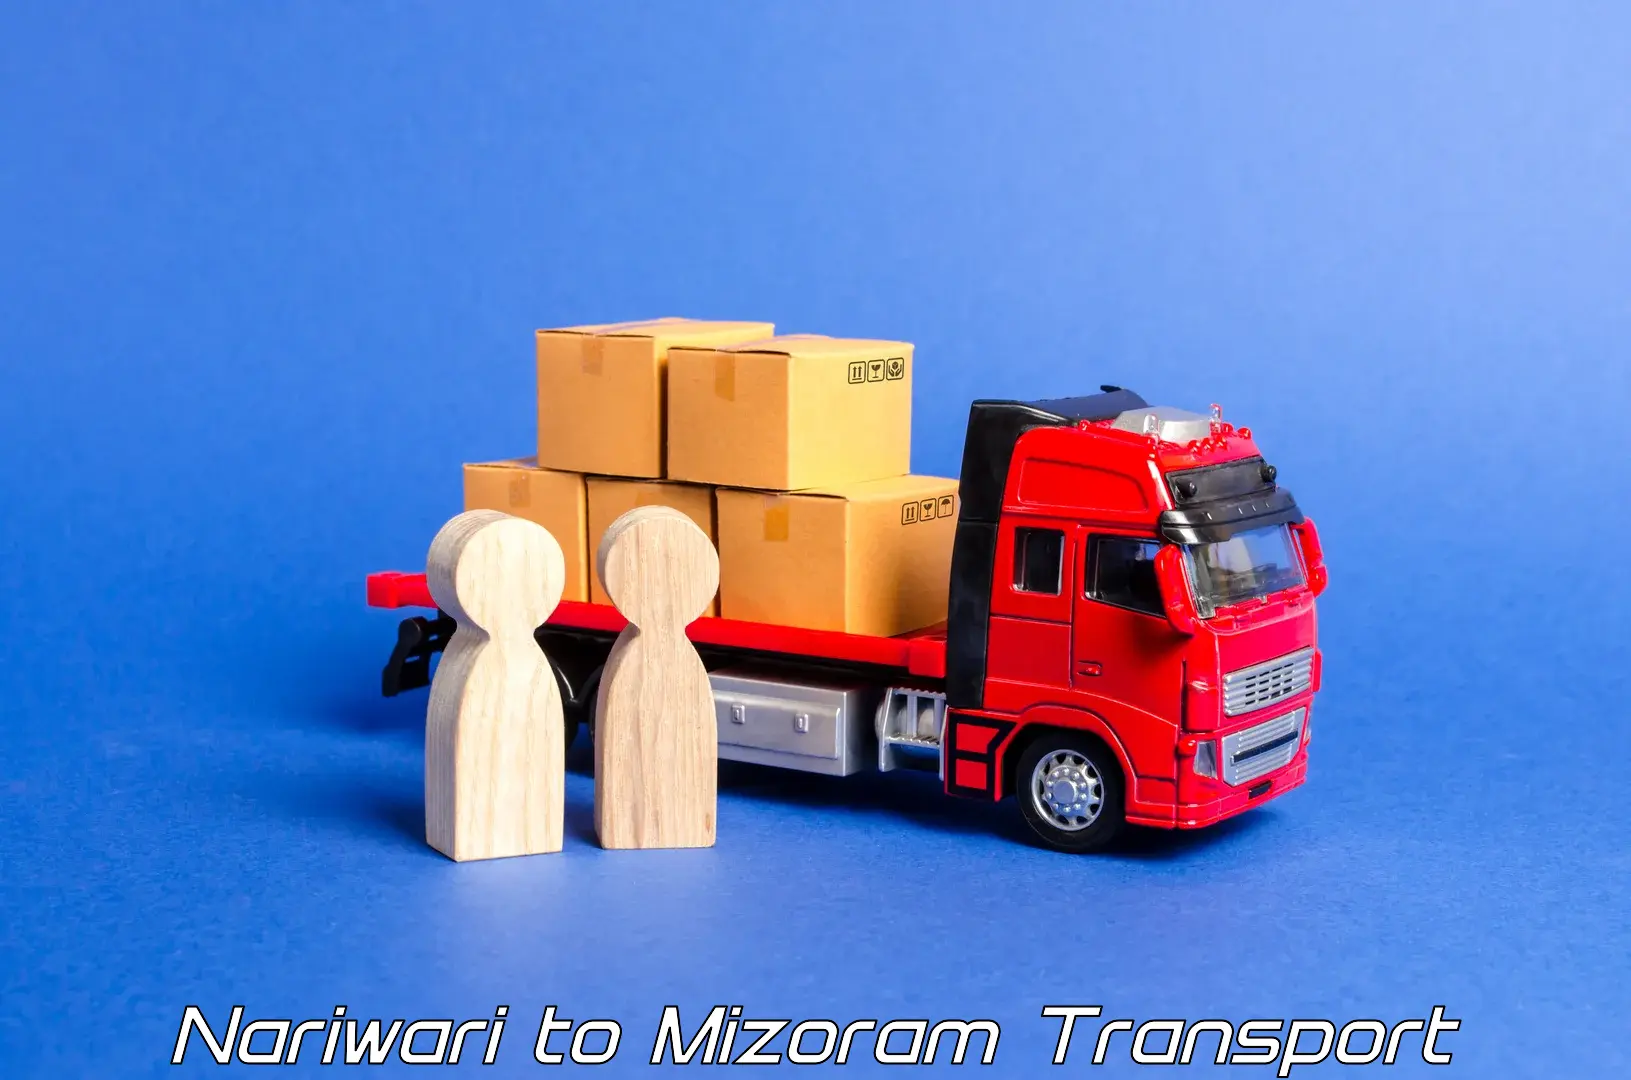 Transportation services in Nariwari to Mizoram